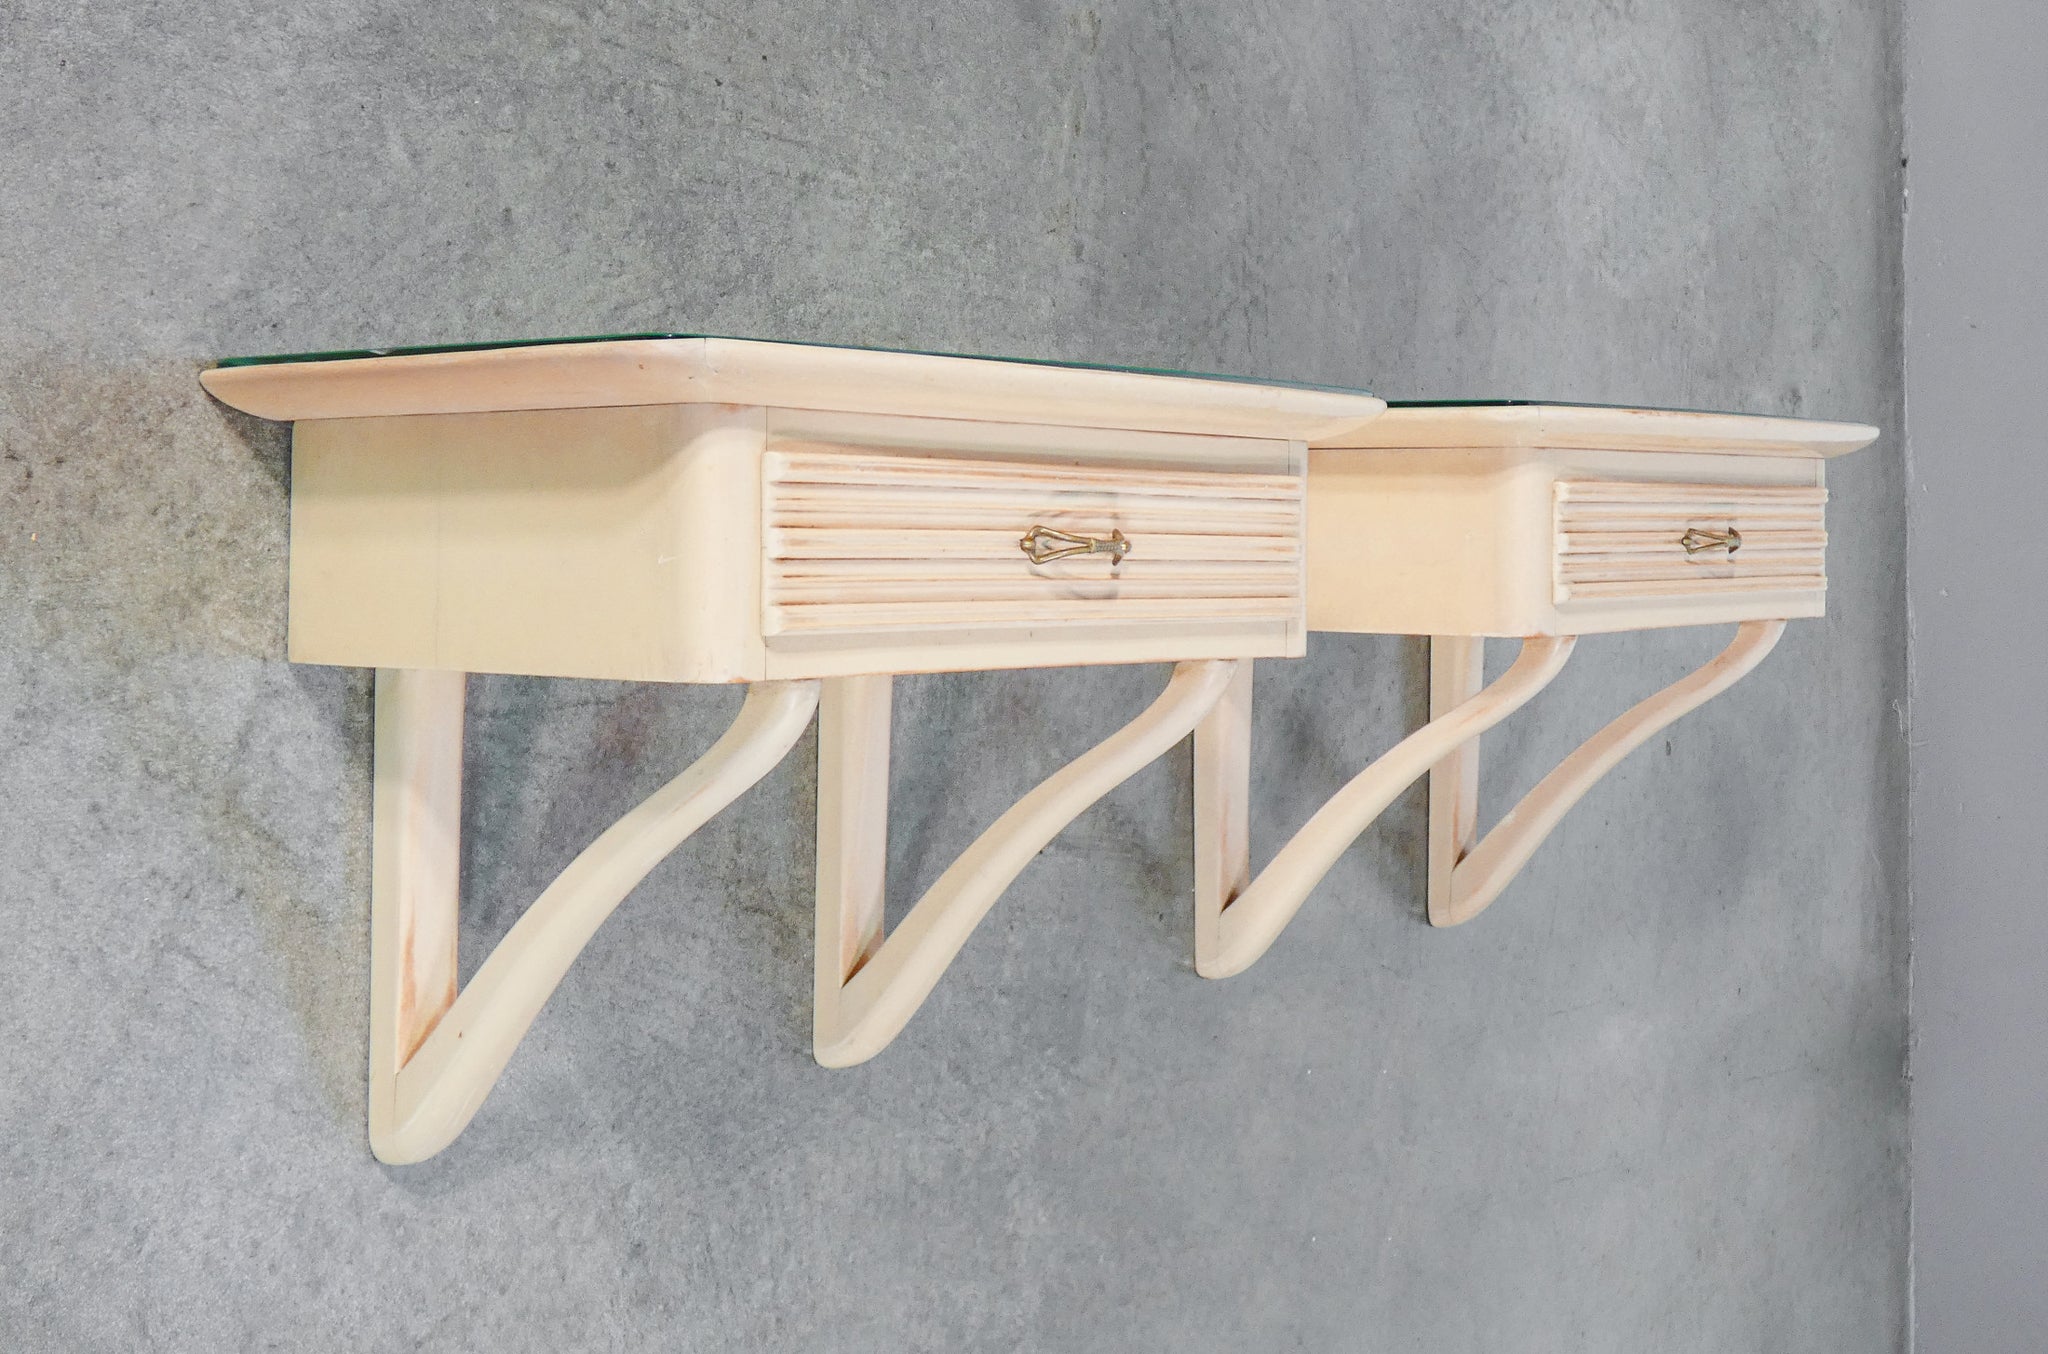 coppia comodini design italia stile valabrega mensole legno laccato cassetto